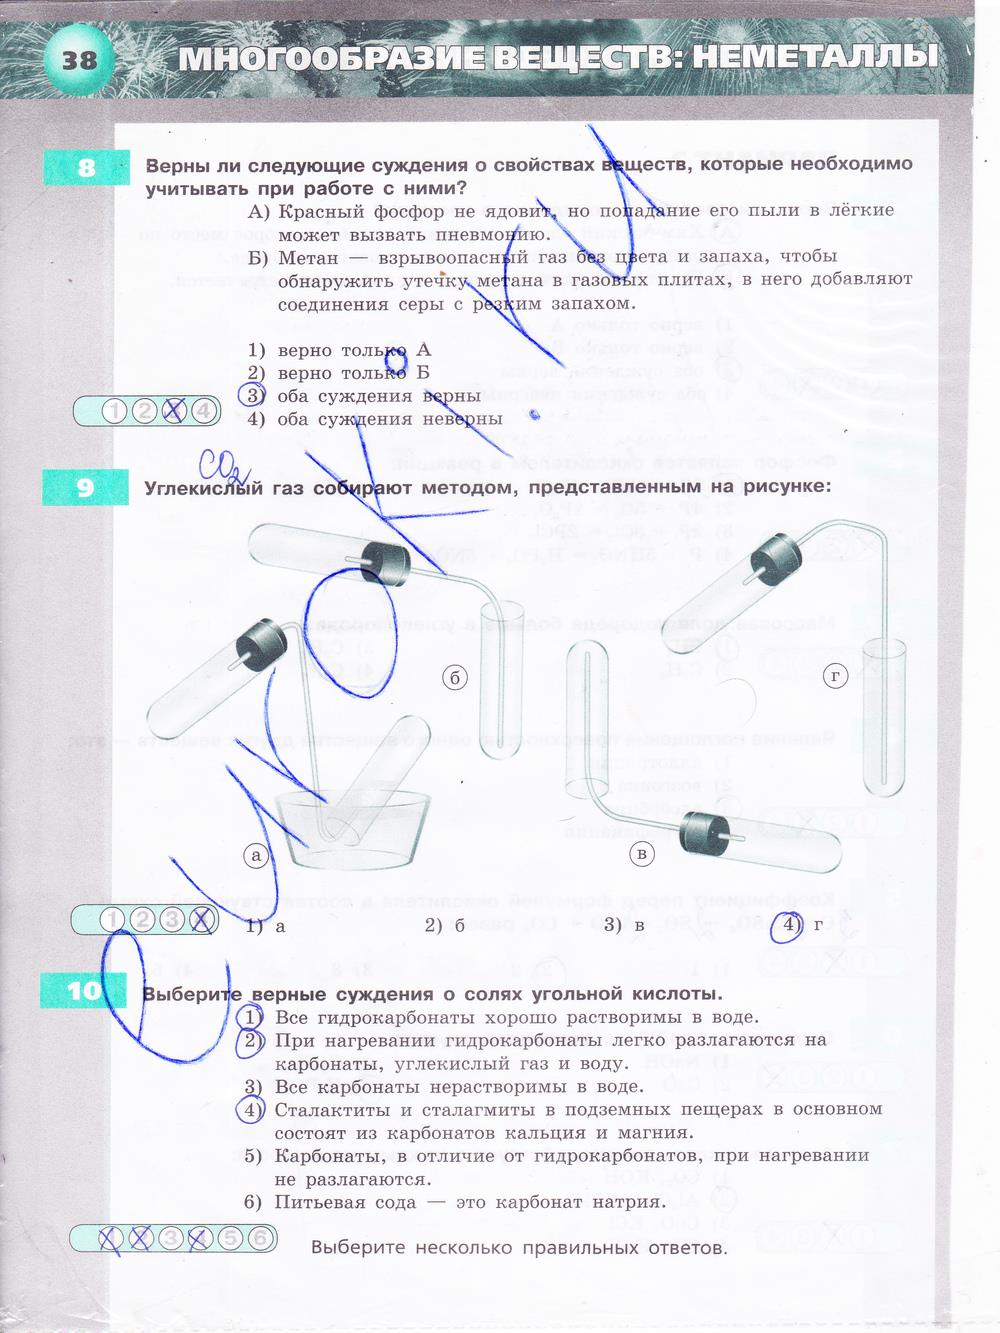 гдз 9 класс тетрадь-экзаменатор страница 38 химия Бобылева, Бирюлина